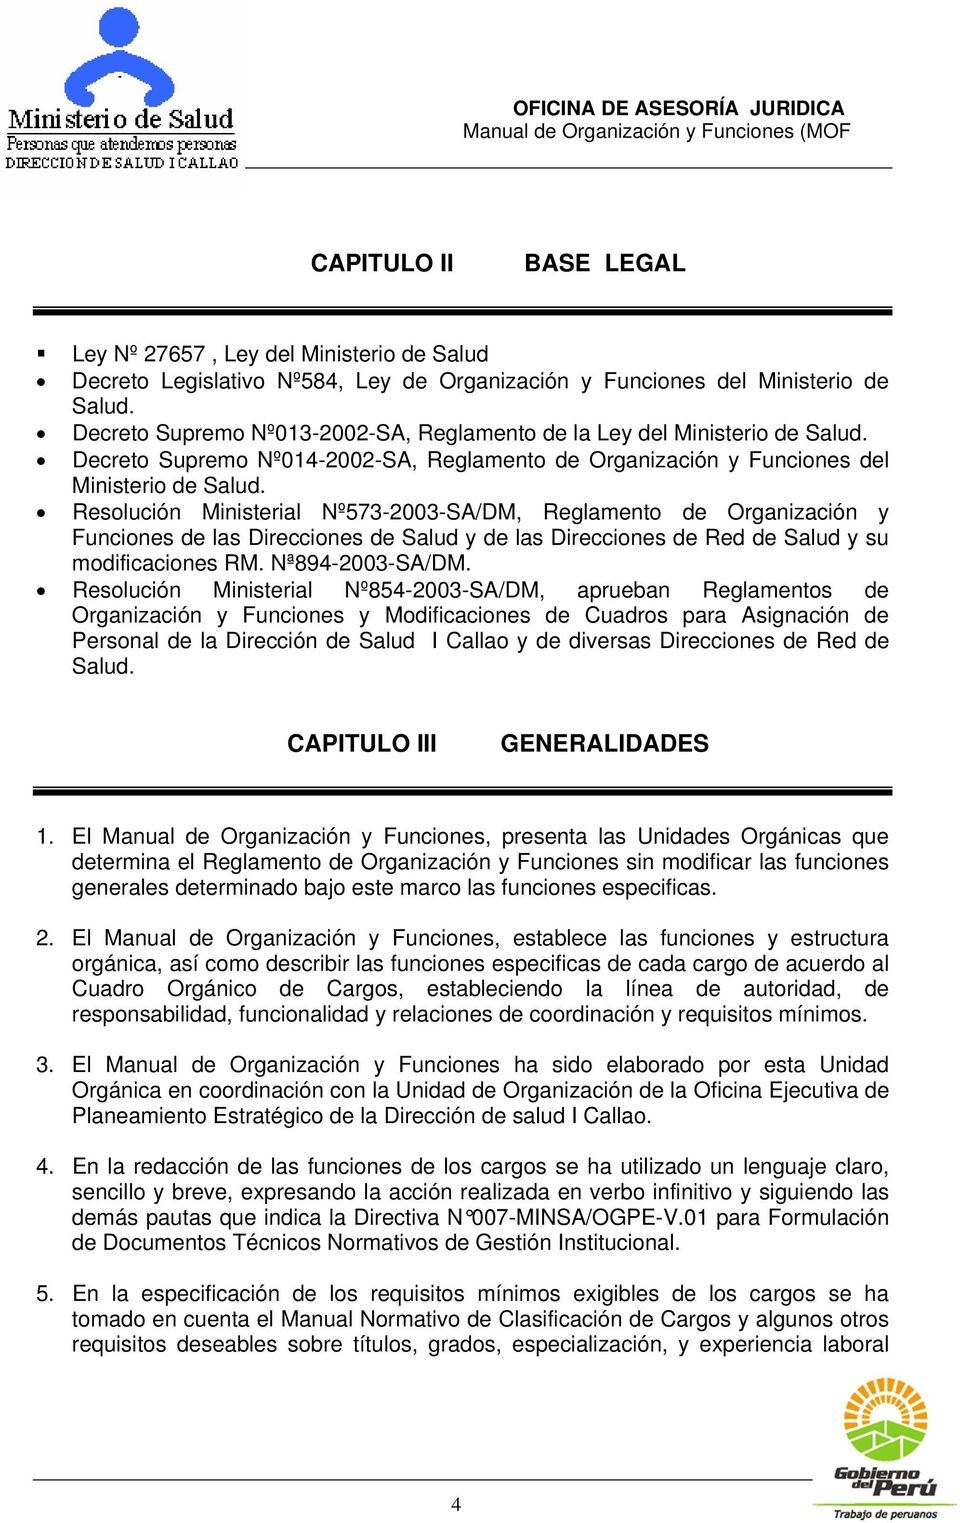 Resolución Ministerial Nº573-2003-SA/DM, Reglamento de Organización y Funciones de las Direcciones de Salud y de las Direcciones de Red de Salud y su modificaciones RM. Nª894-2003-SA/DM.